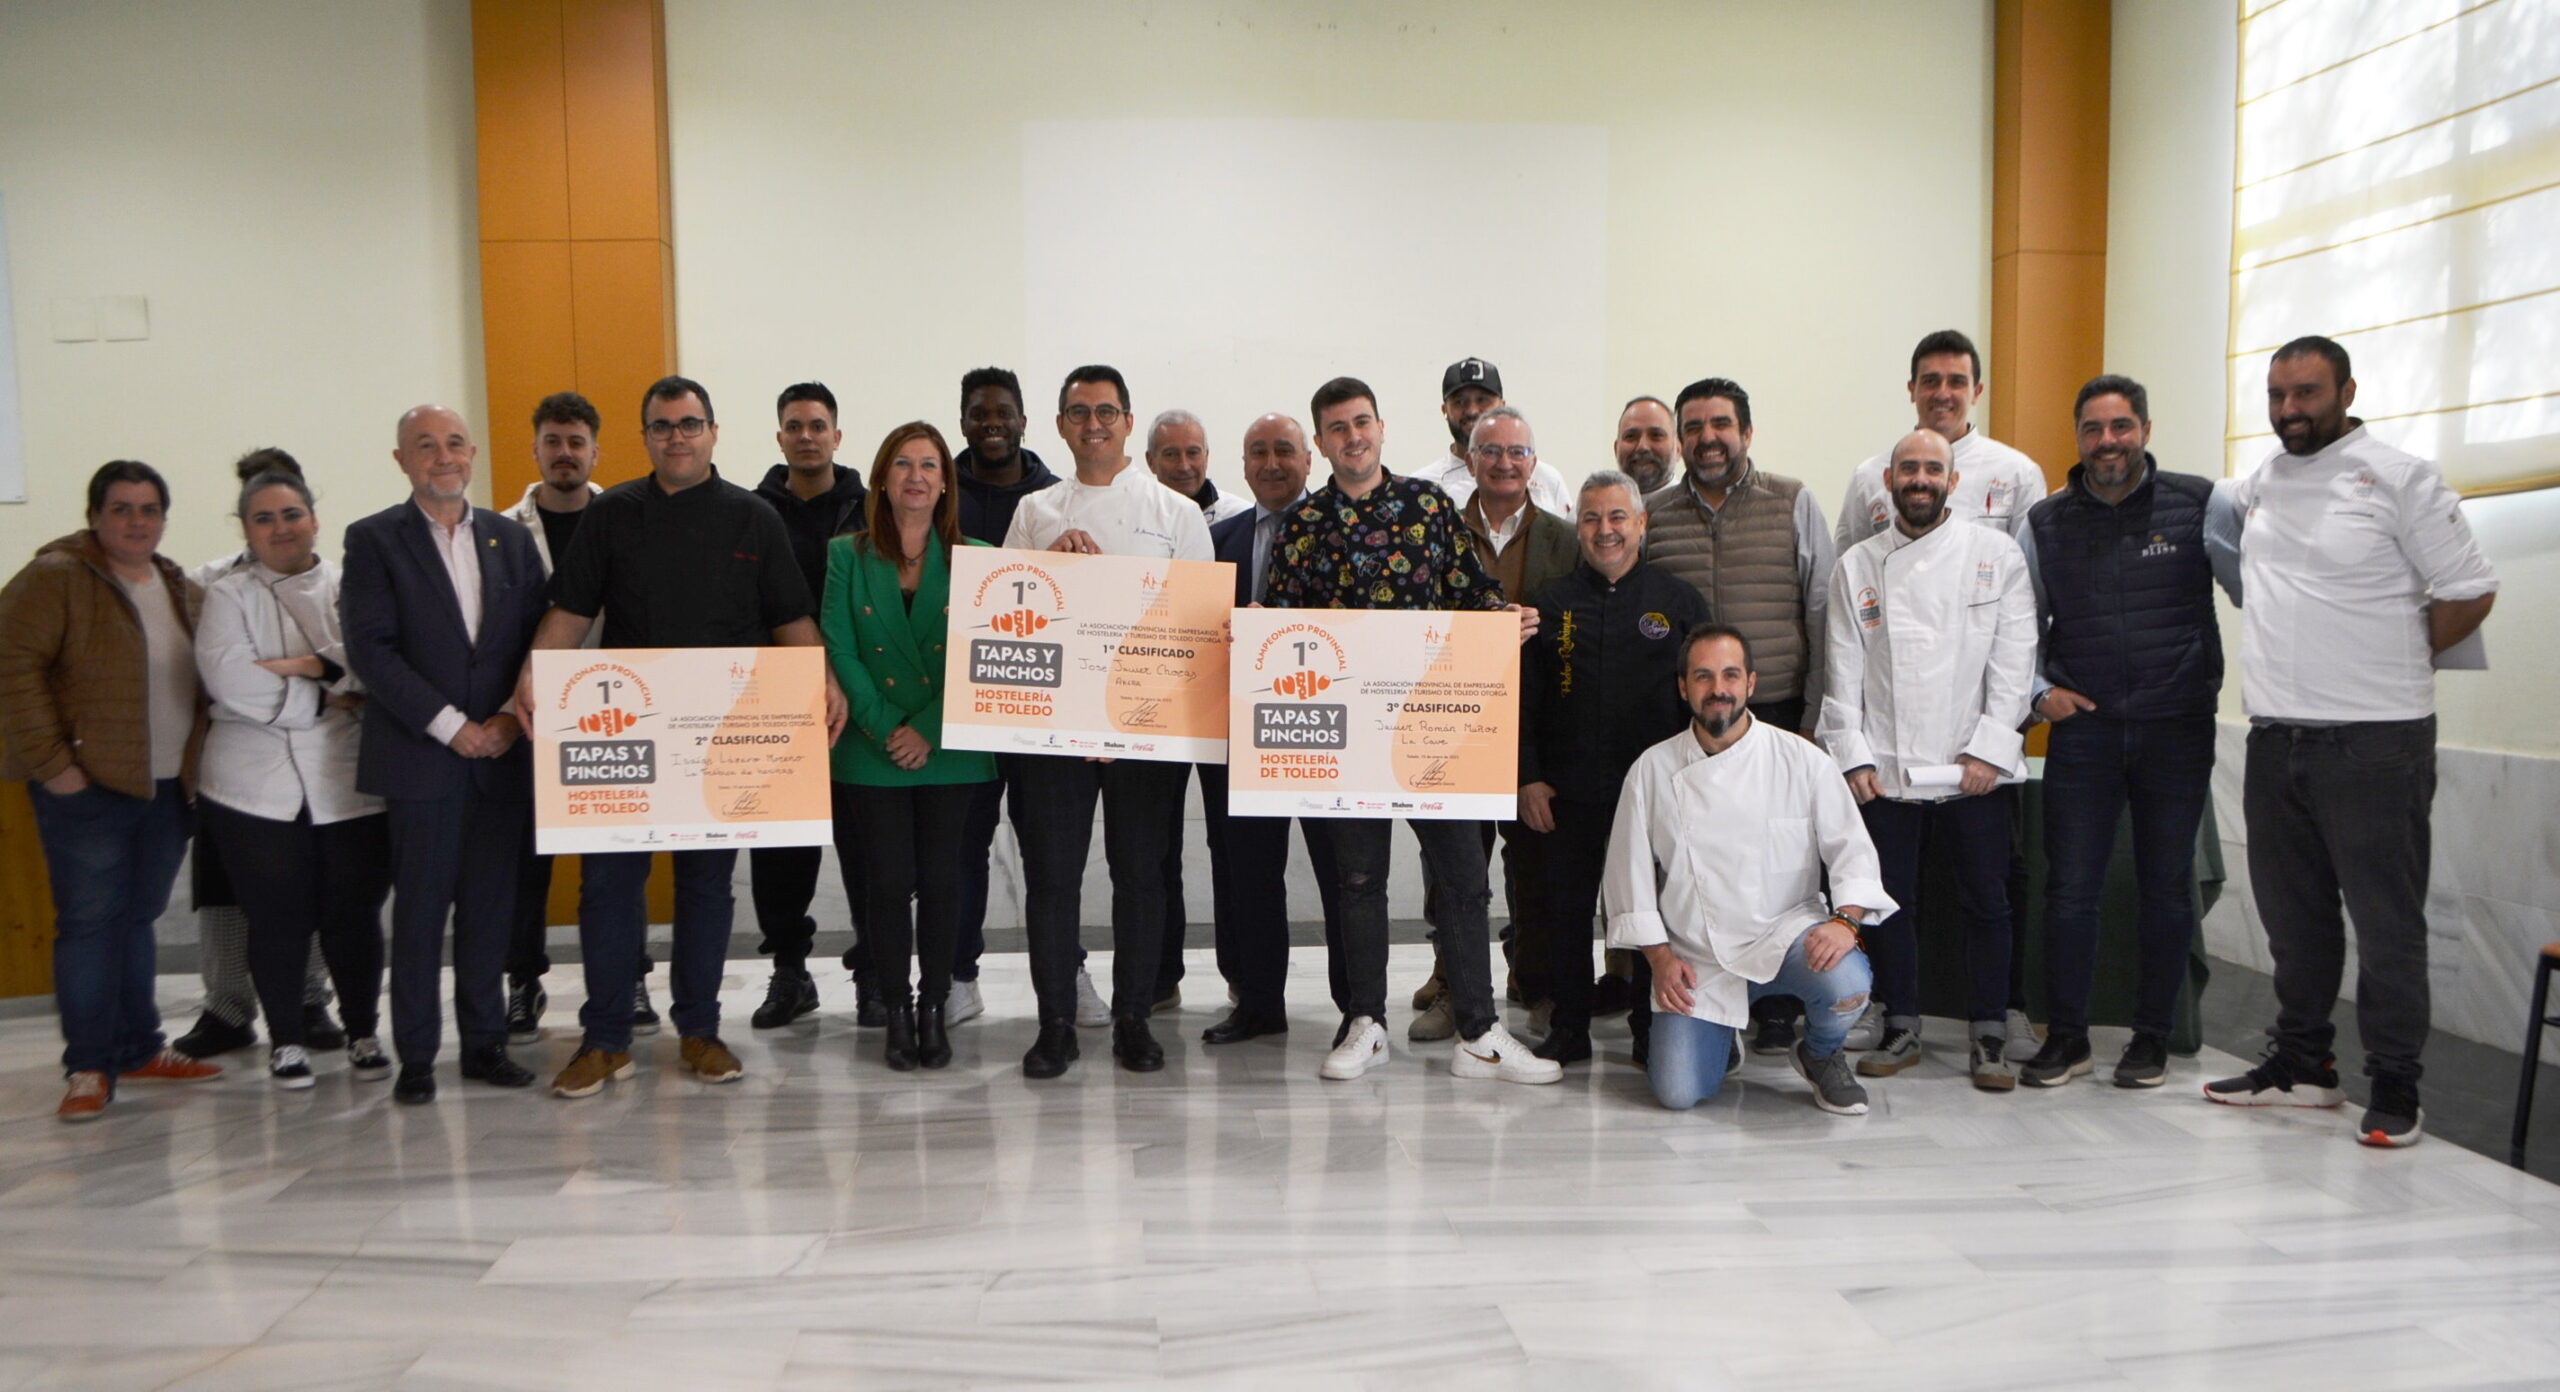 Premiados y autoridades en el I Campeonato Provincial de Tapas y Pinchos “Hostelería de Toledo”.